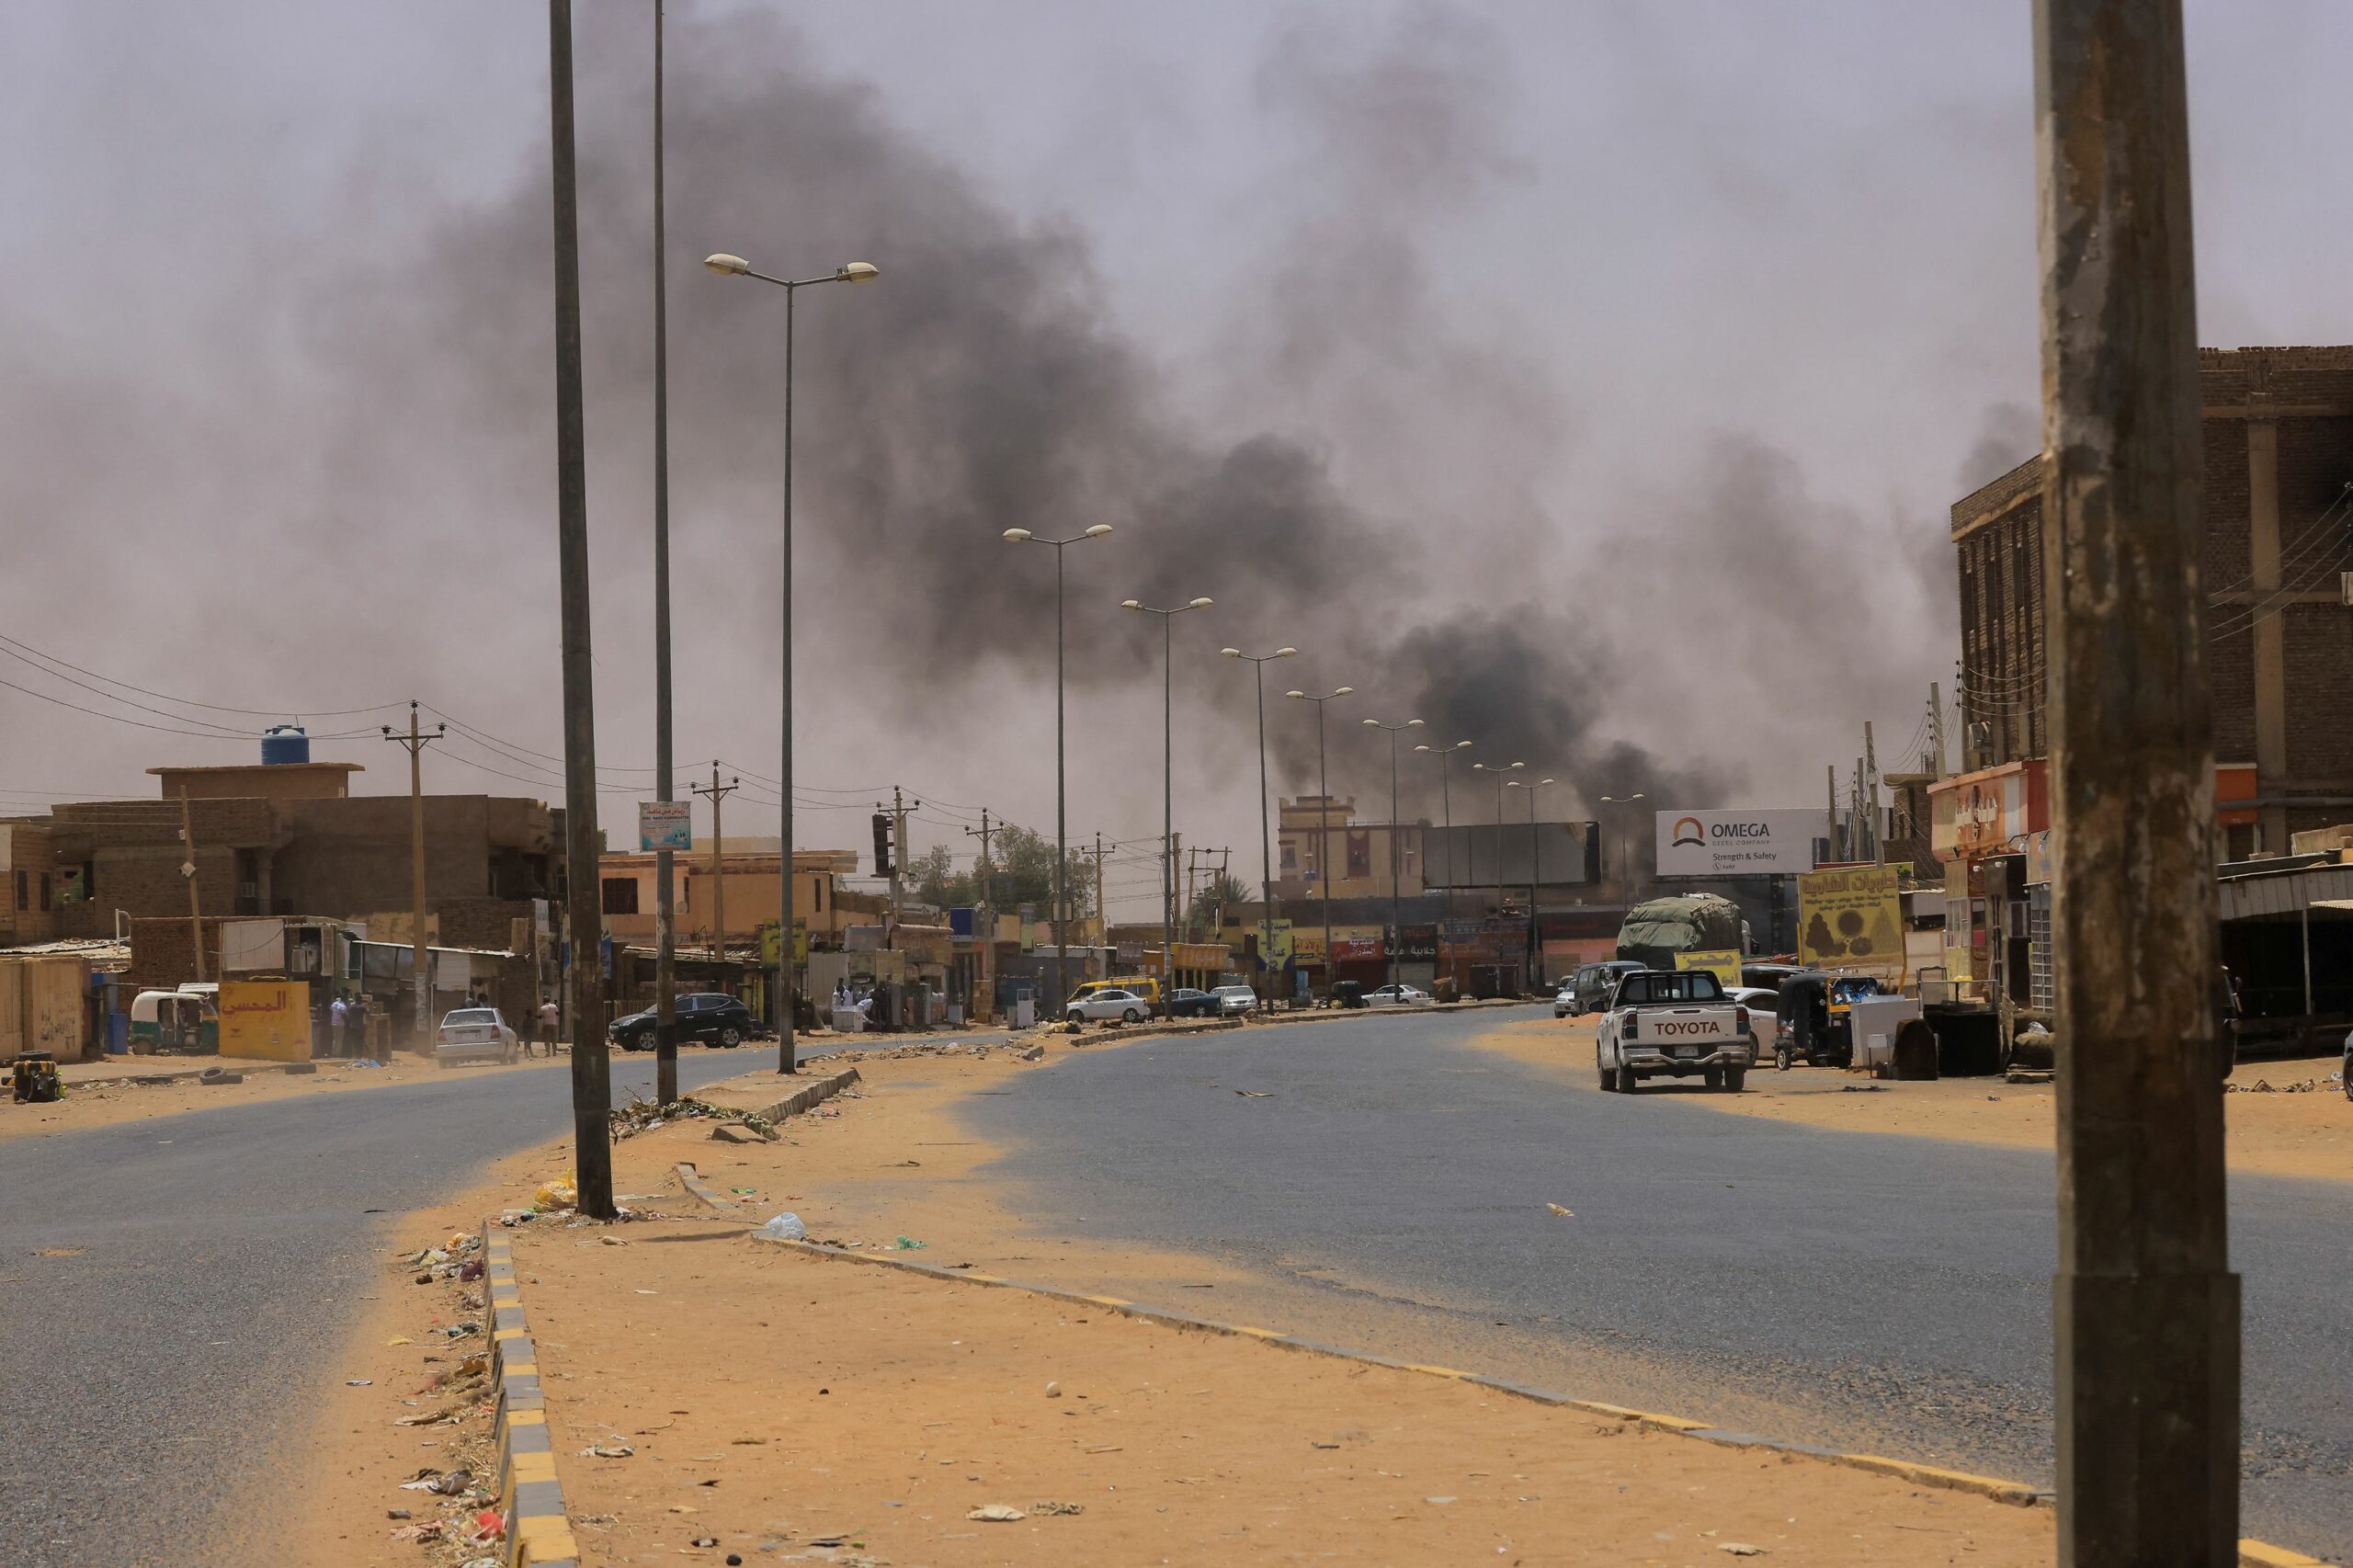 Σουδάν: "Ασταμάτητα τα πυρά" λέει ο Μητροπολίτης Νουβίας - Κατάσταση εκτάκτου ανάγκης από τον Νίκο Δένδια